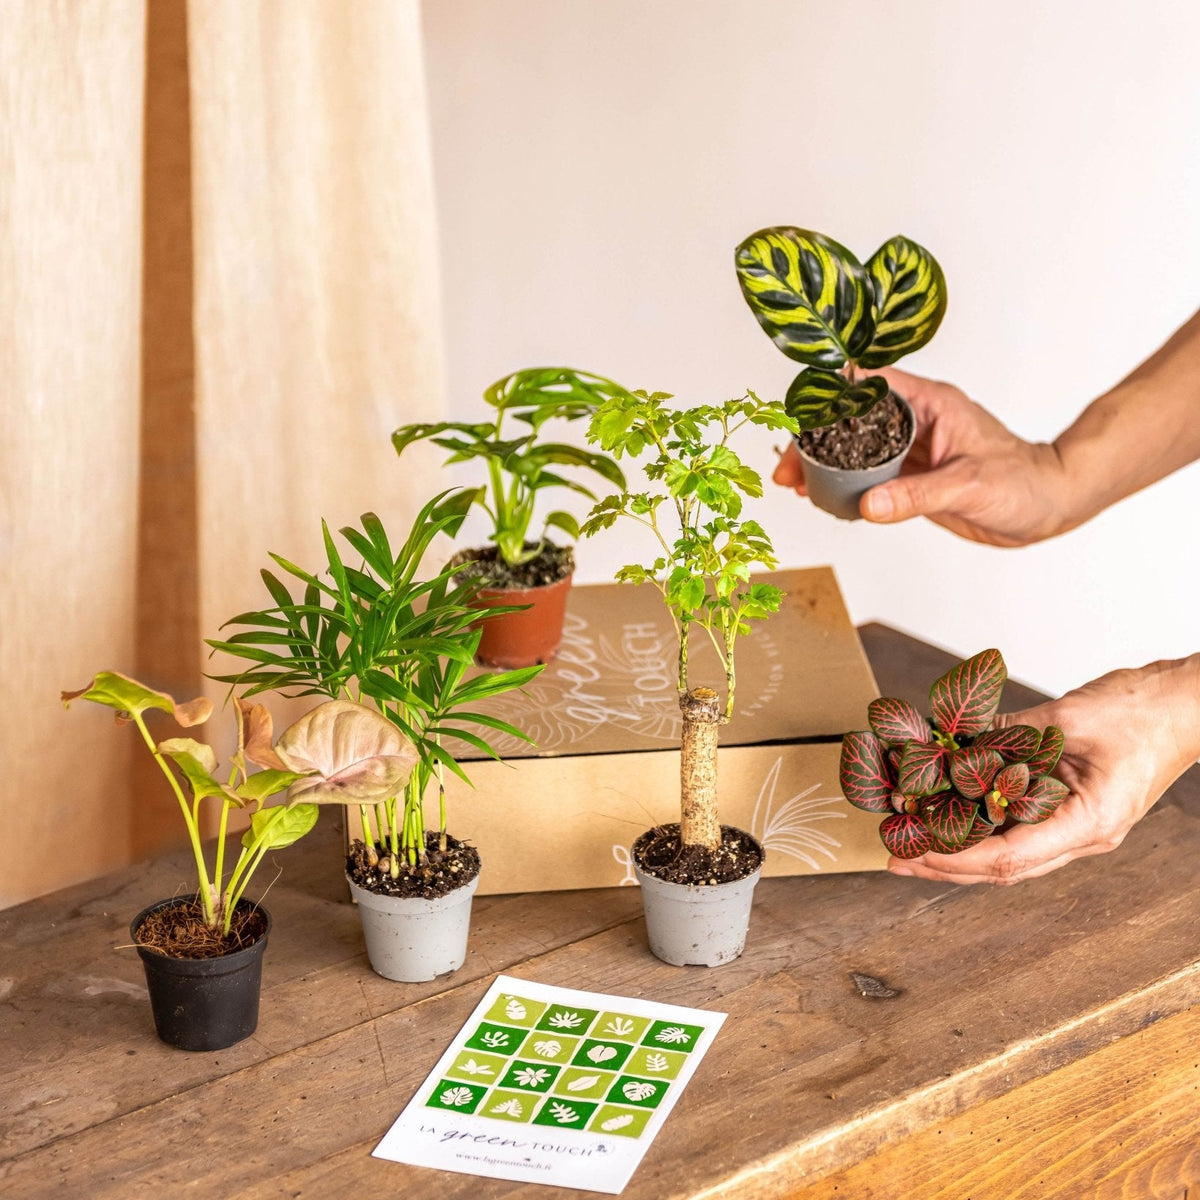 Boîte en bois naturel avec plantes succulentes et cactus